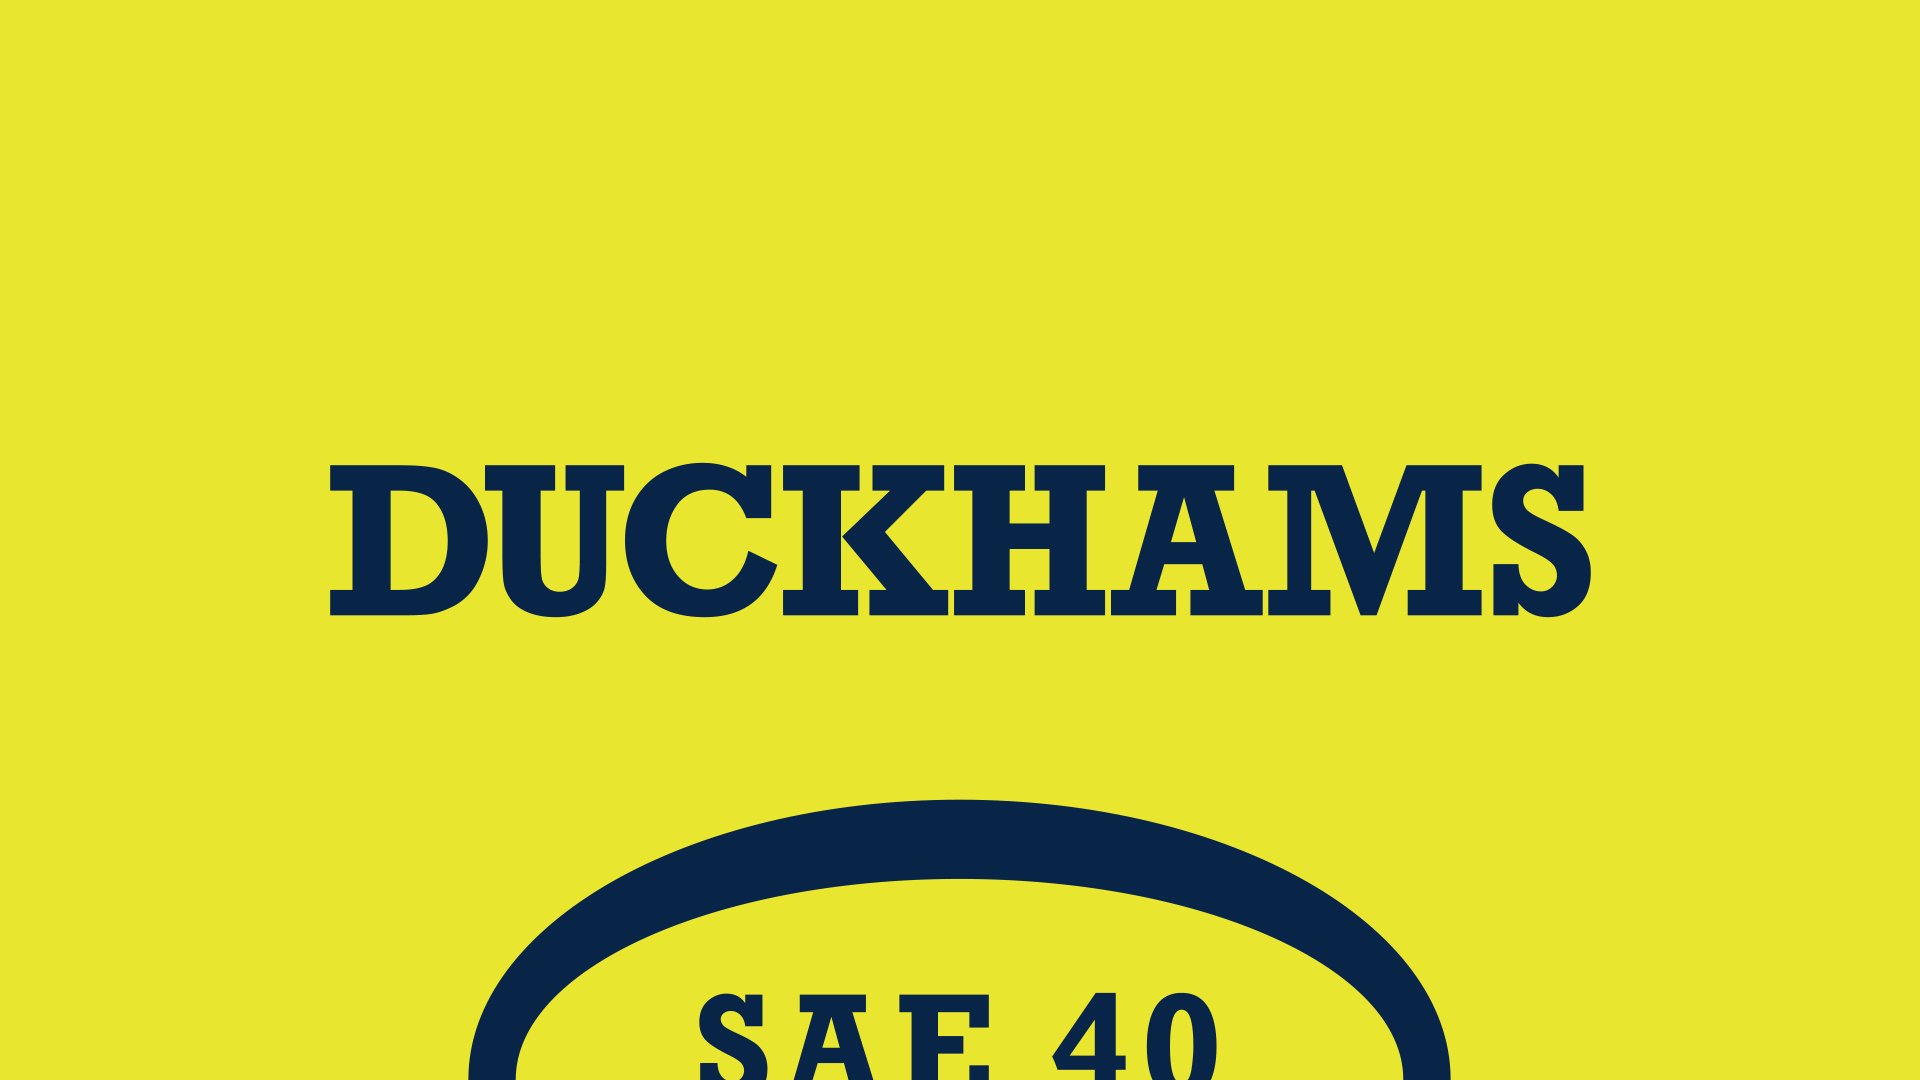 Heritage-Duckhams-logo.jpg